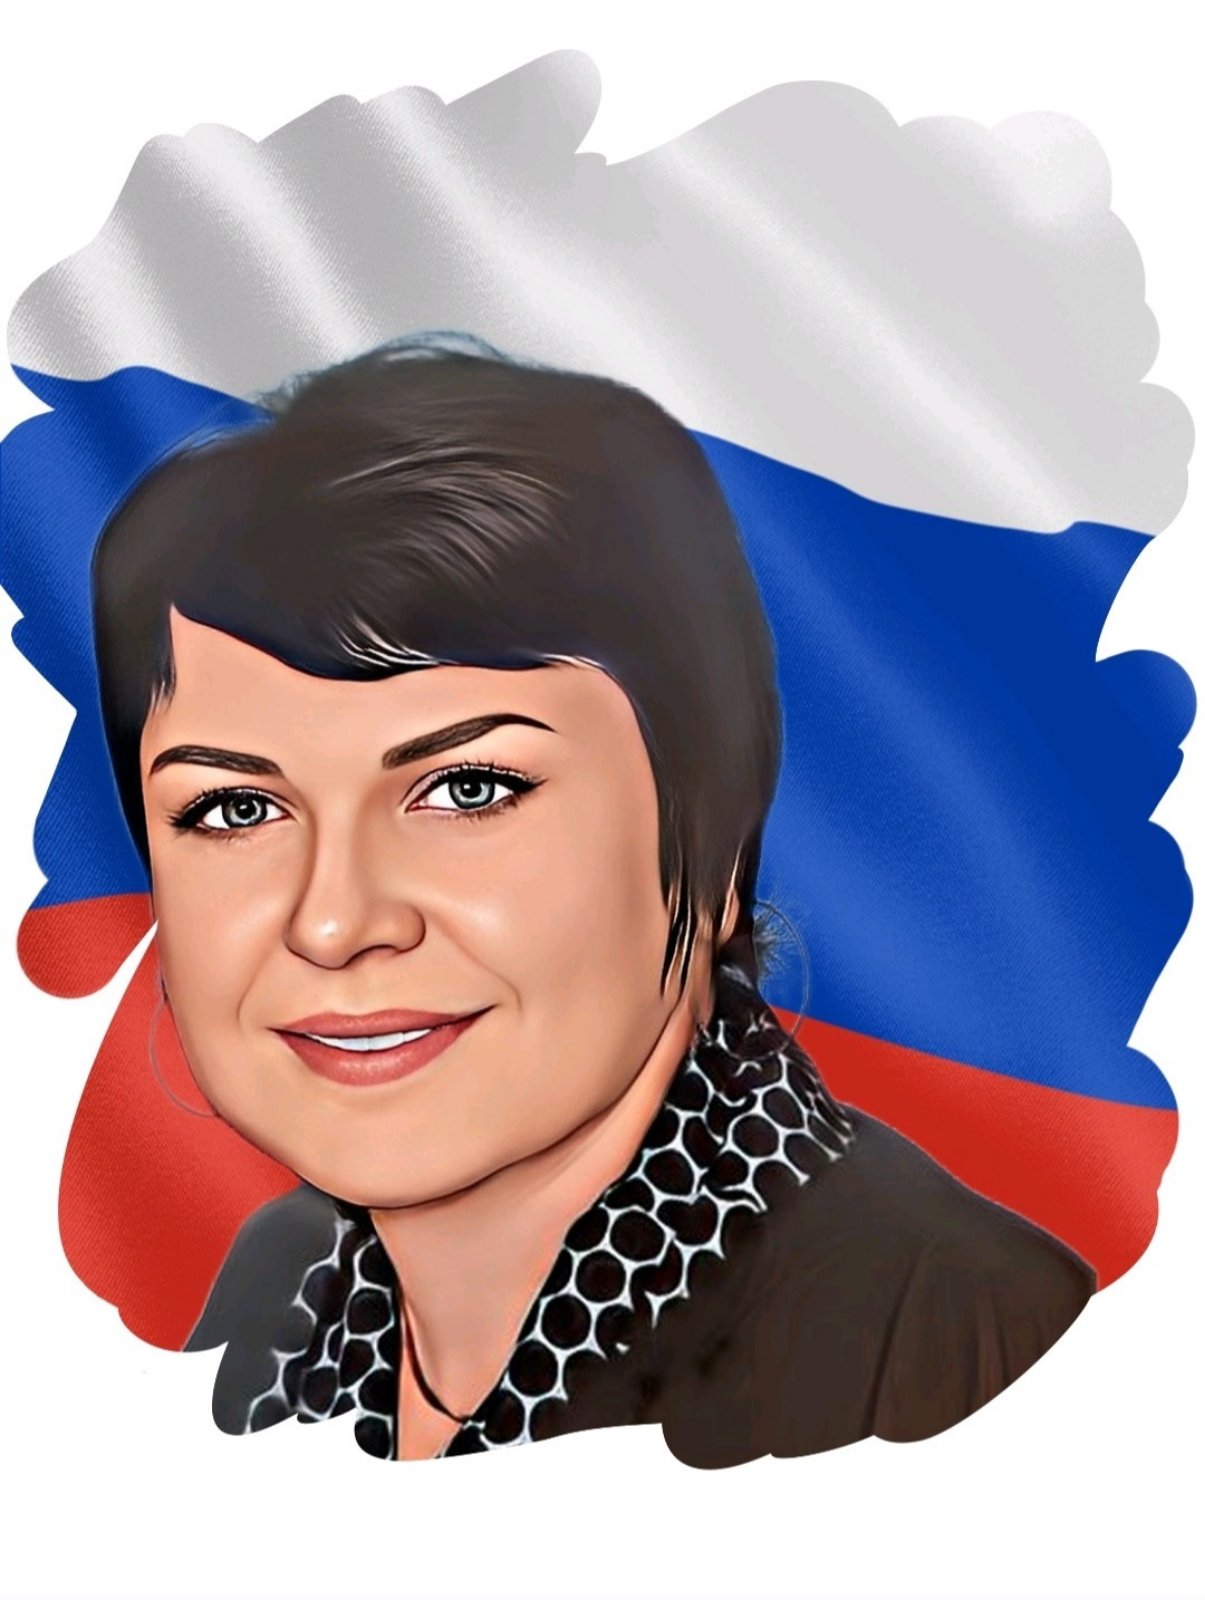 Григорова Ирина Львовна.